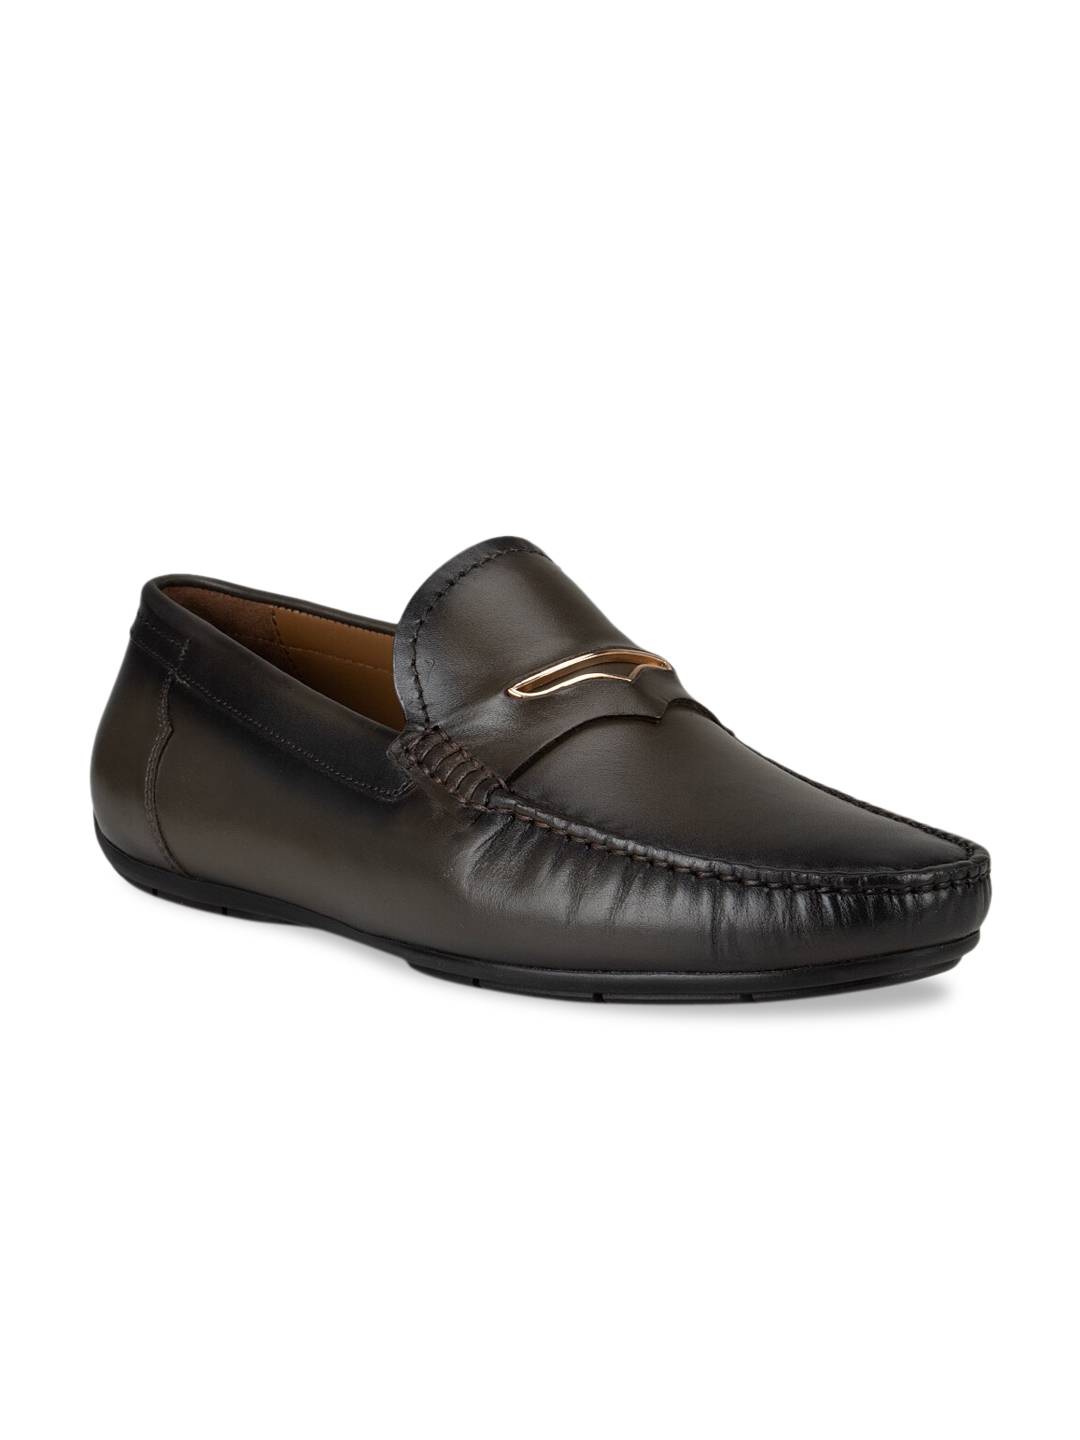 Buy ROSSO BRUNELLO Men Olive Solid Loafers - Formal Shoes for Men ...